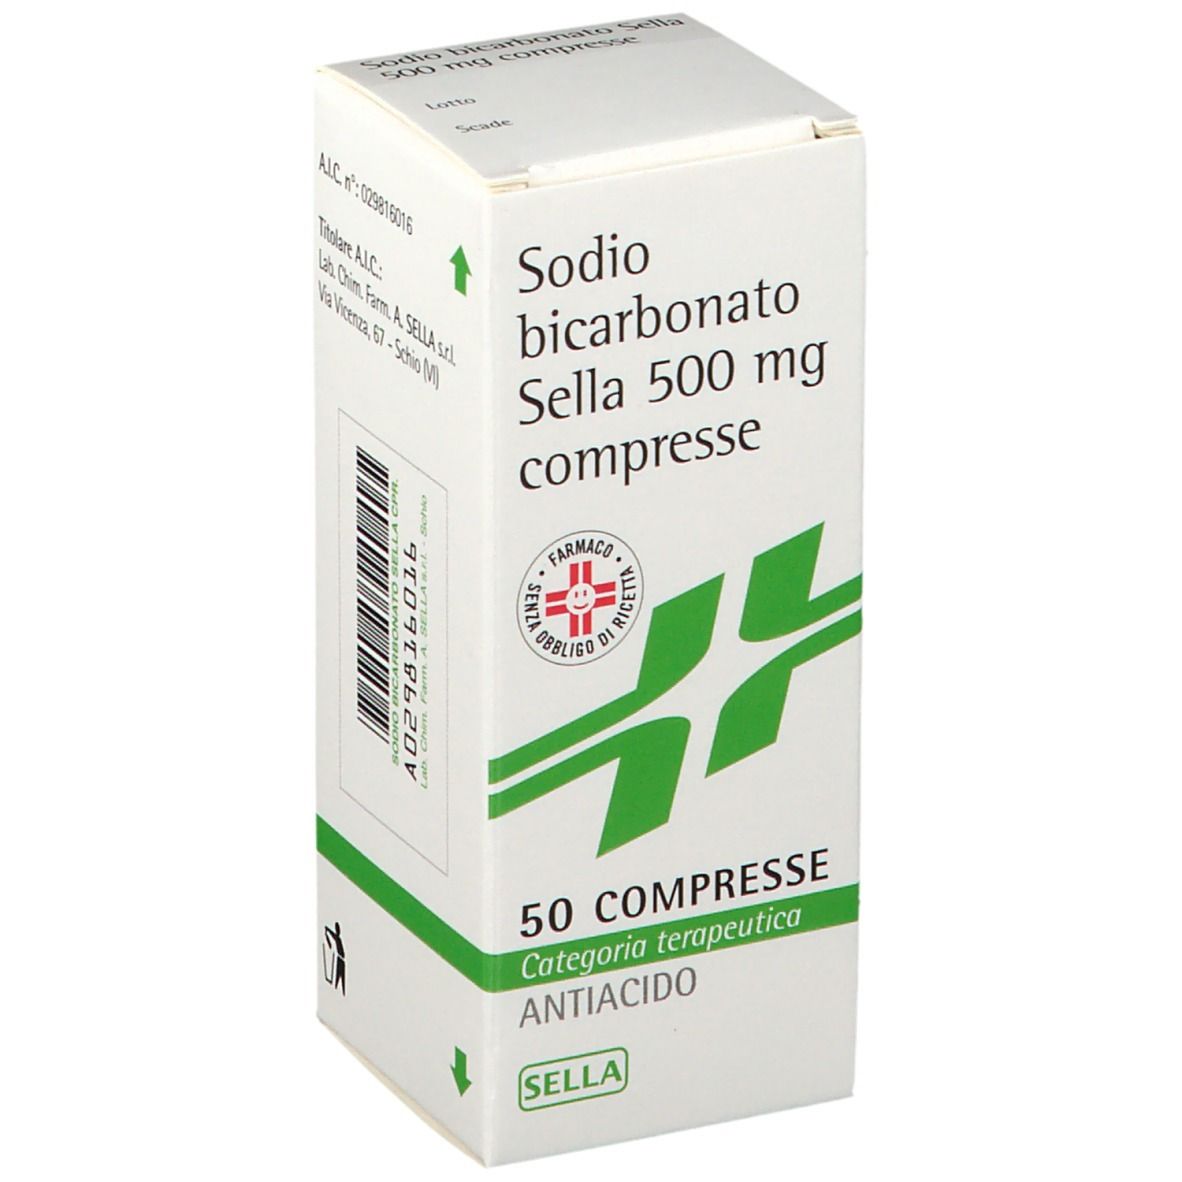 SODIO BICARBONATO SELLA 500 mg Compresse